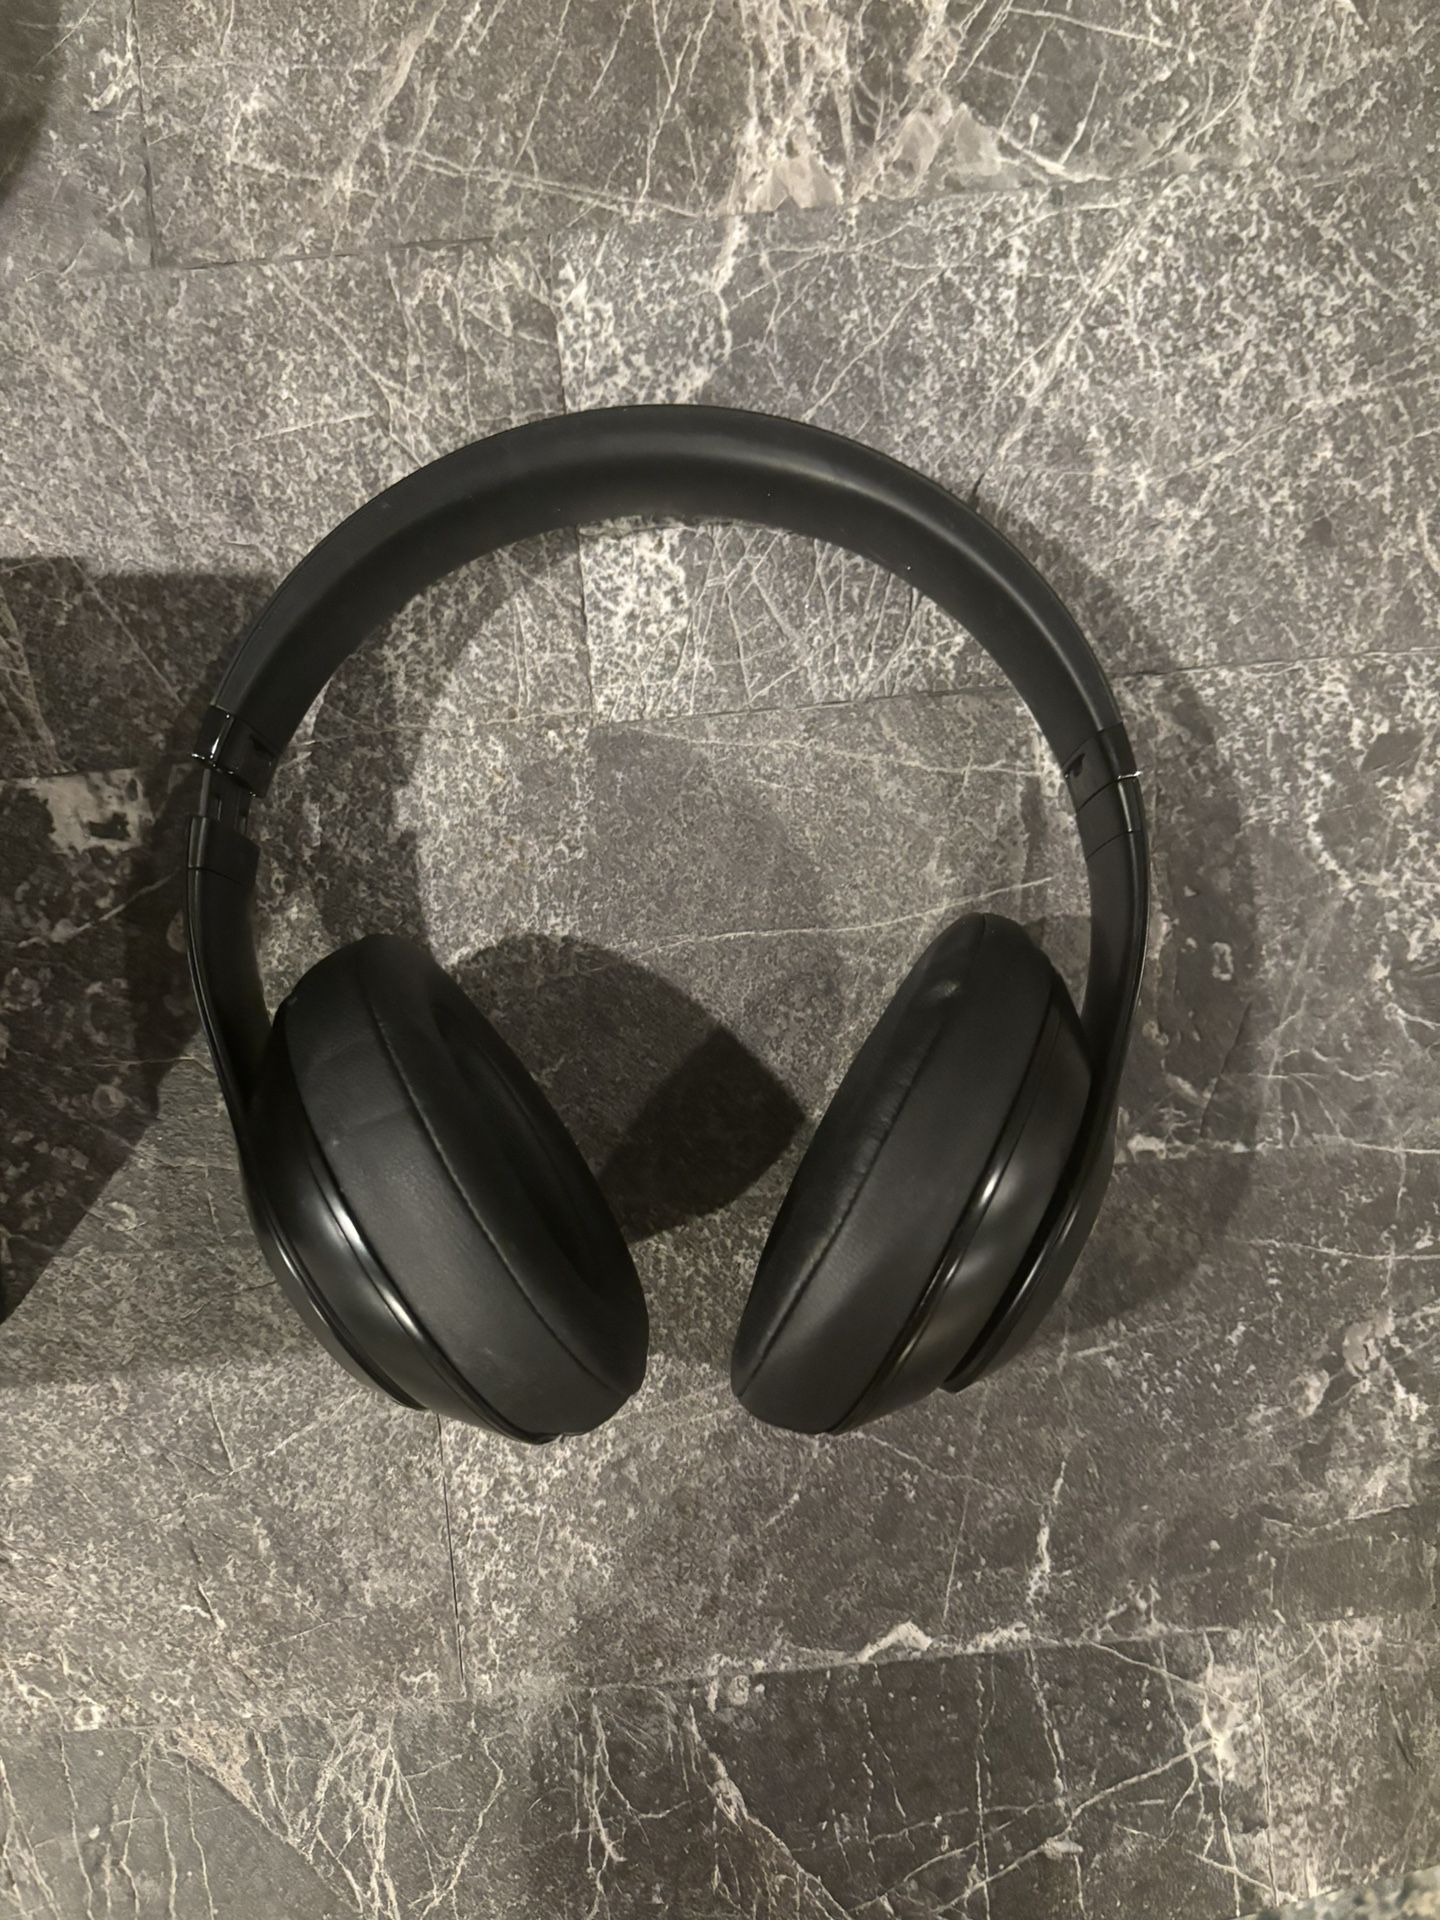 Beats Studio 3 Wireless Headphones Black